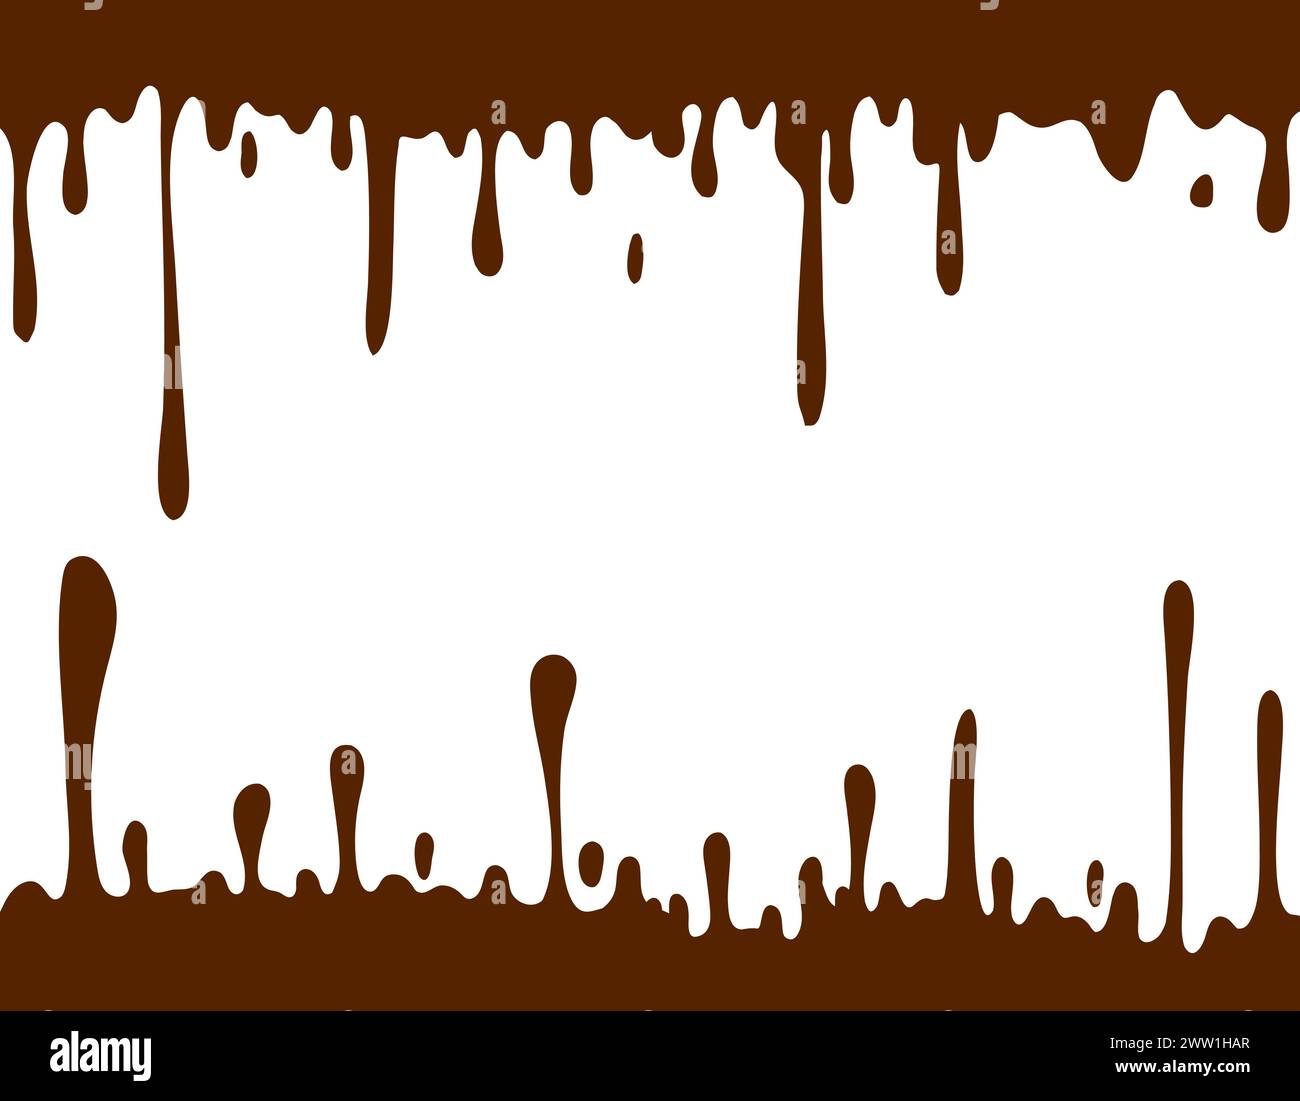 Gouttes et taches de chocolat. Affiche moderne de l'éclaboussure de lait frais sur fond clair, design plat. Applaudissez du lait. Illustration vectorielle, EPS 10. Illustration de Vecteur